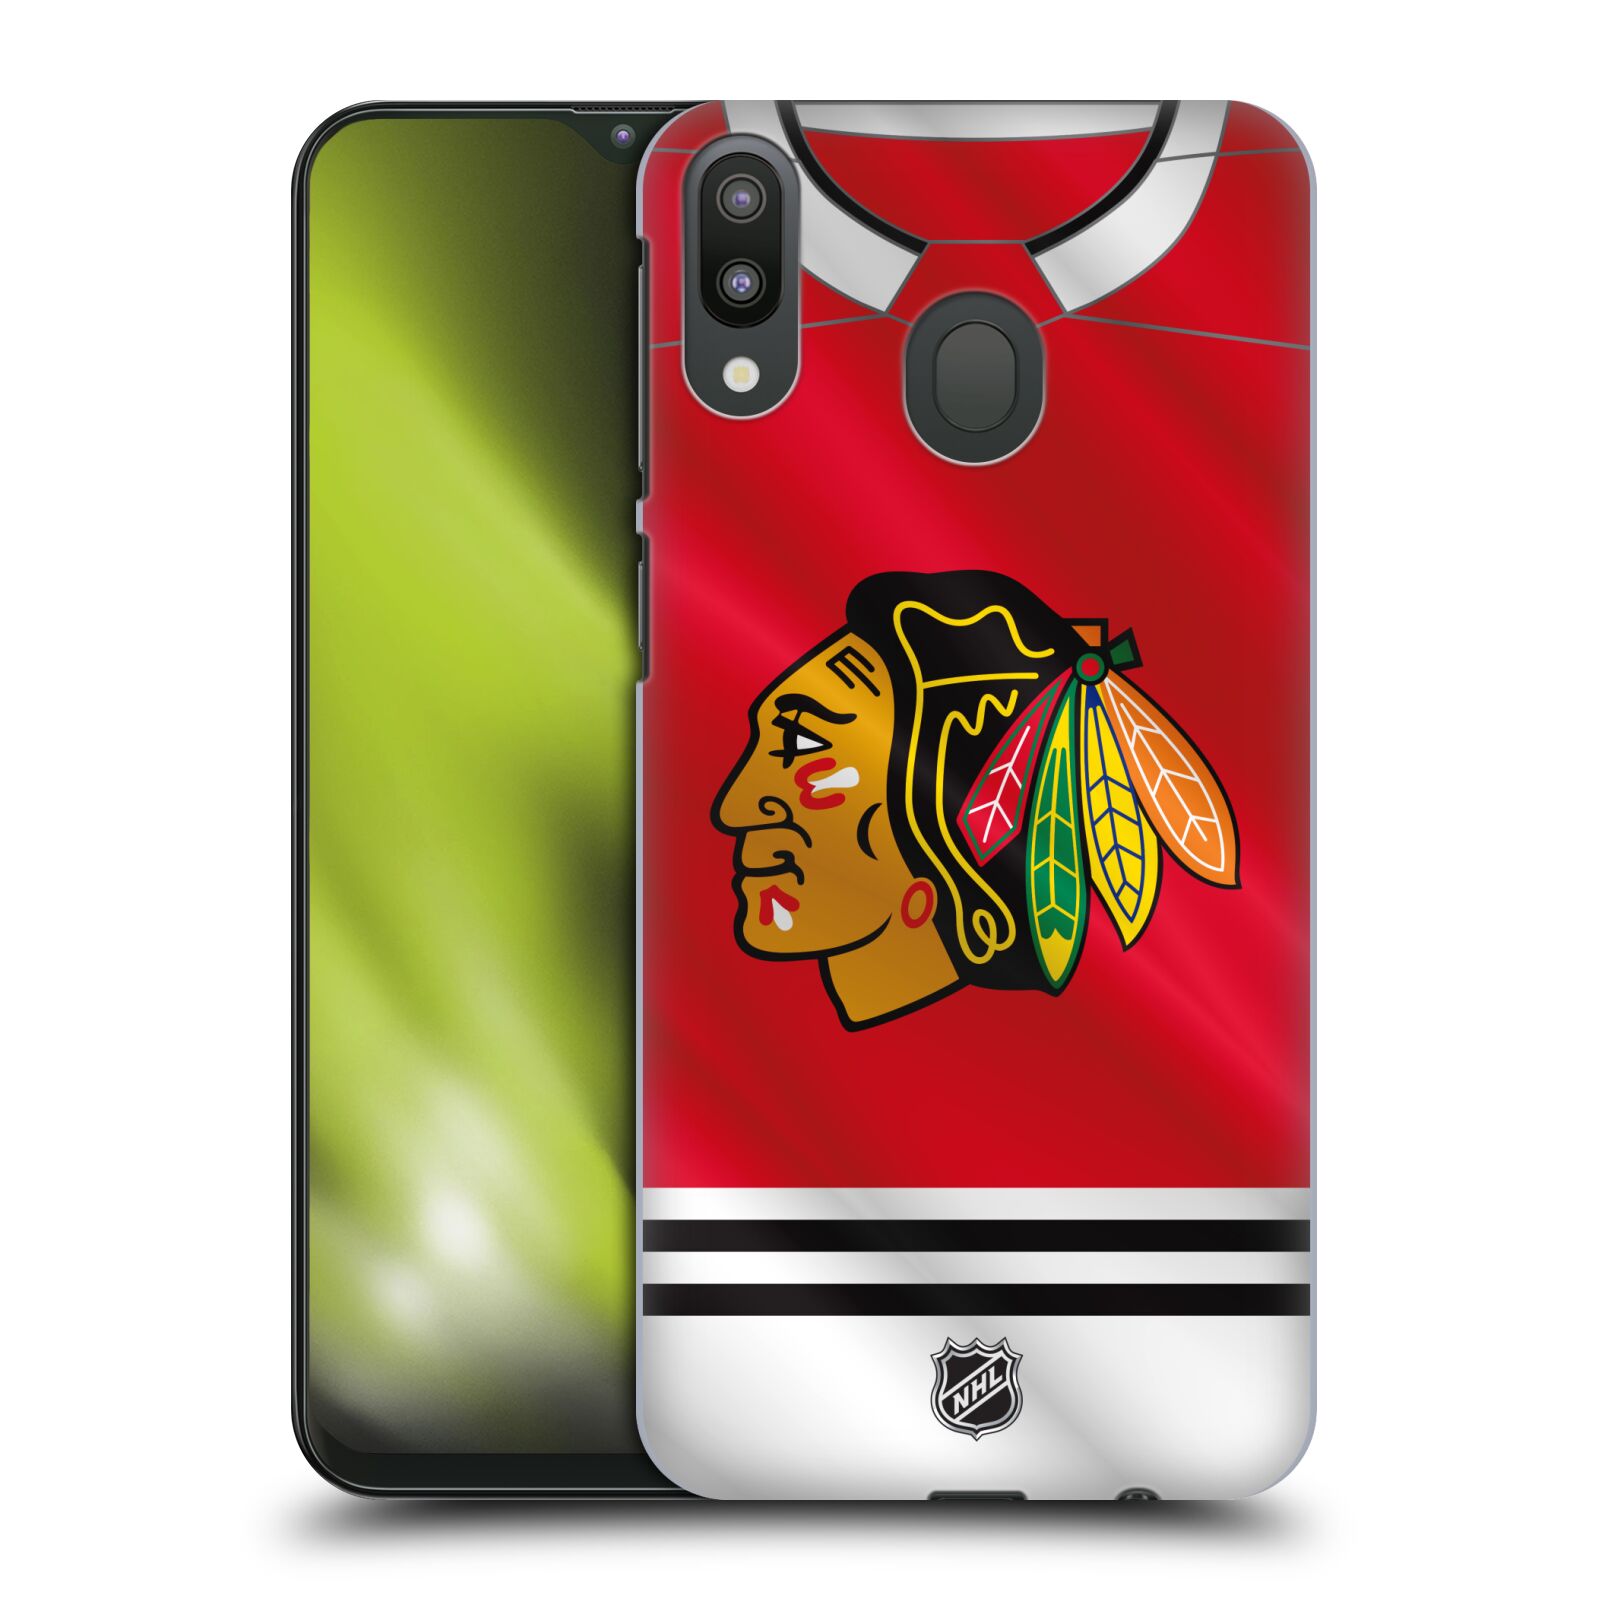 Pouzdro na mobil Samsung Galaxy M20 - HEAD CASE - Hokej NHL - Chicago Blackhawks - dres